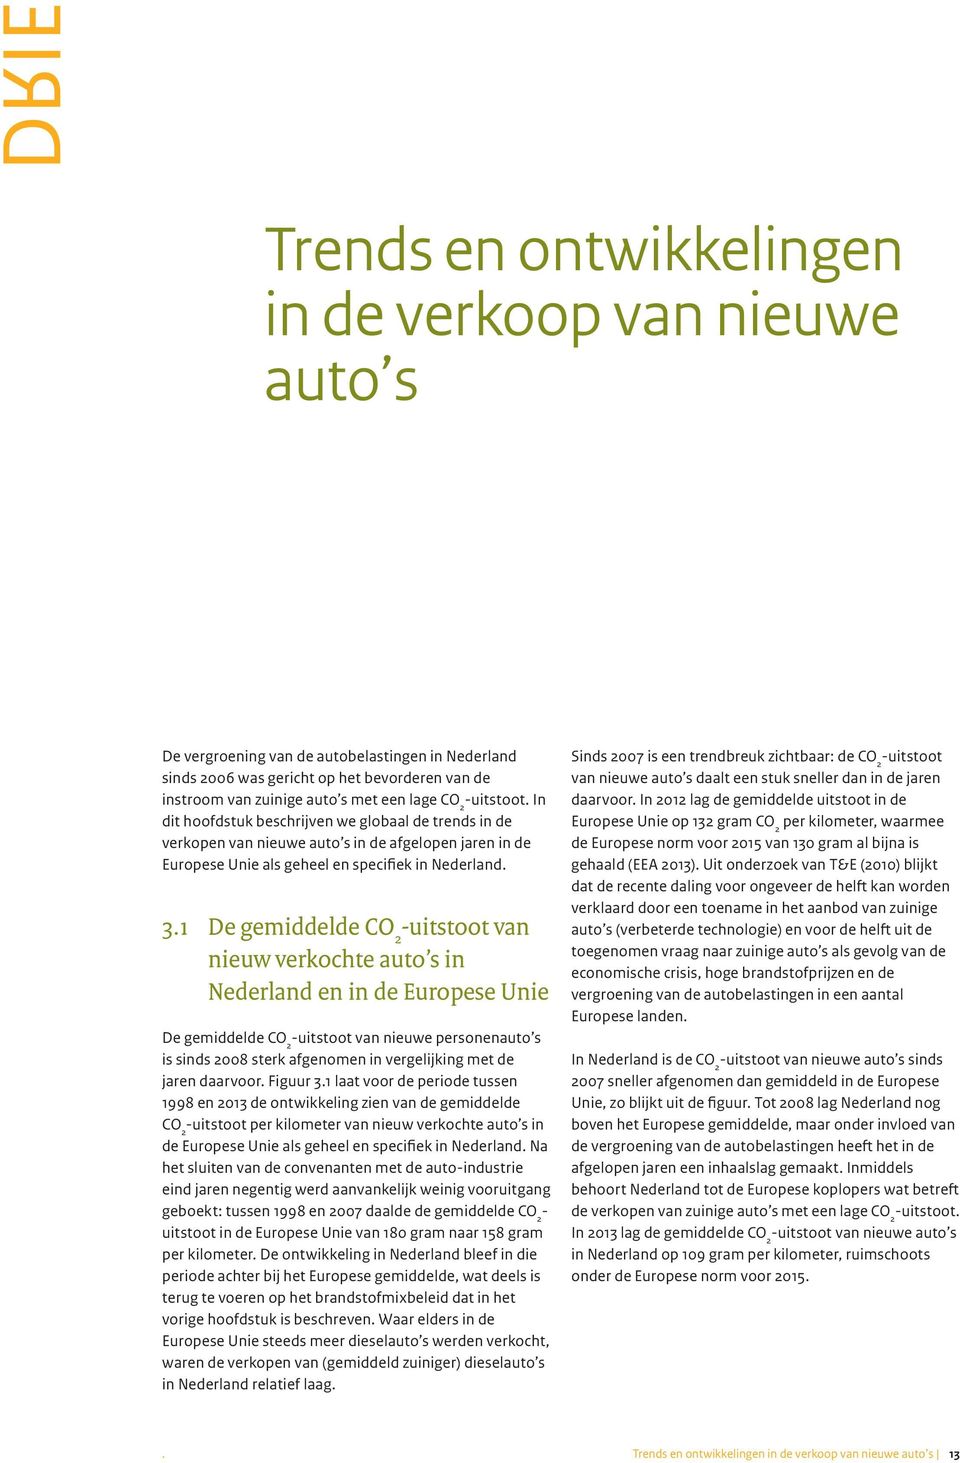 1 De gemiddelde uitstoot van nieuw verkochte auto s in Nederland en in de Europese Unie De gemiddelde uitstoot van nieuwe personenauto s is sinds 2008 sterk afgenomen in vergelijking met de jaren